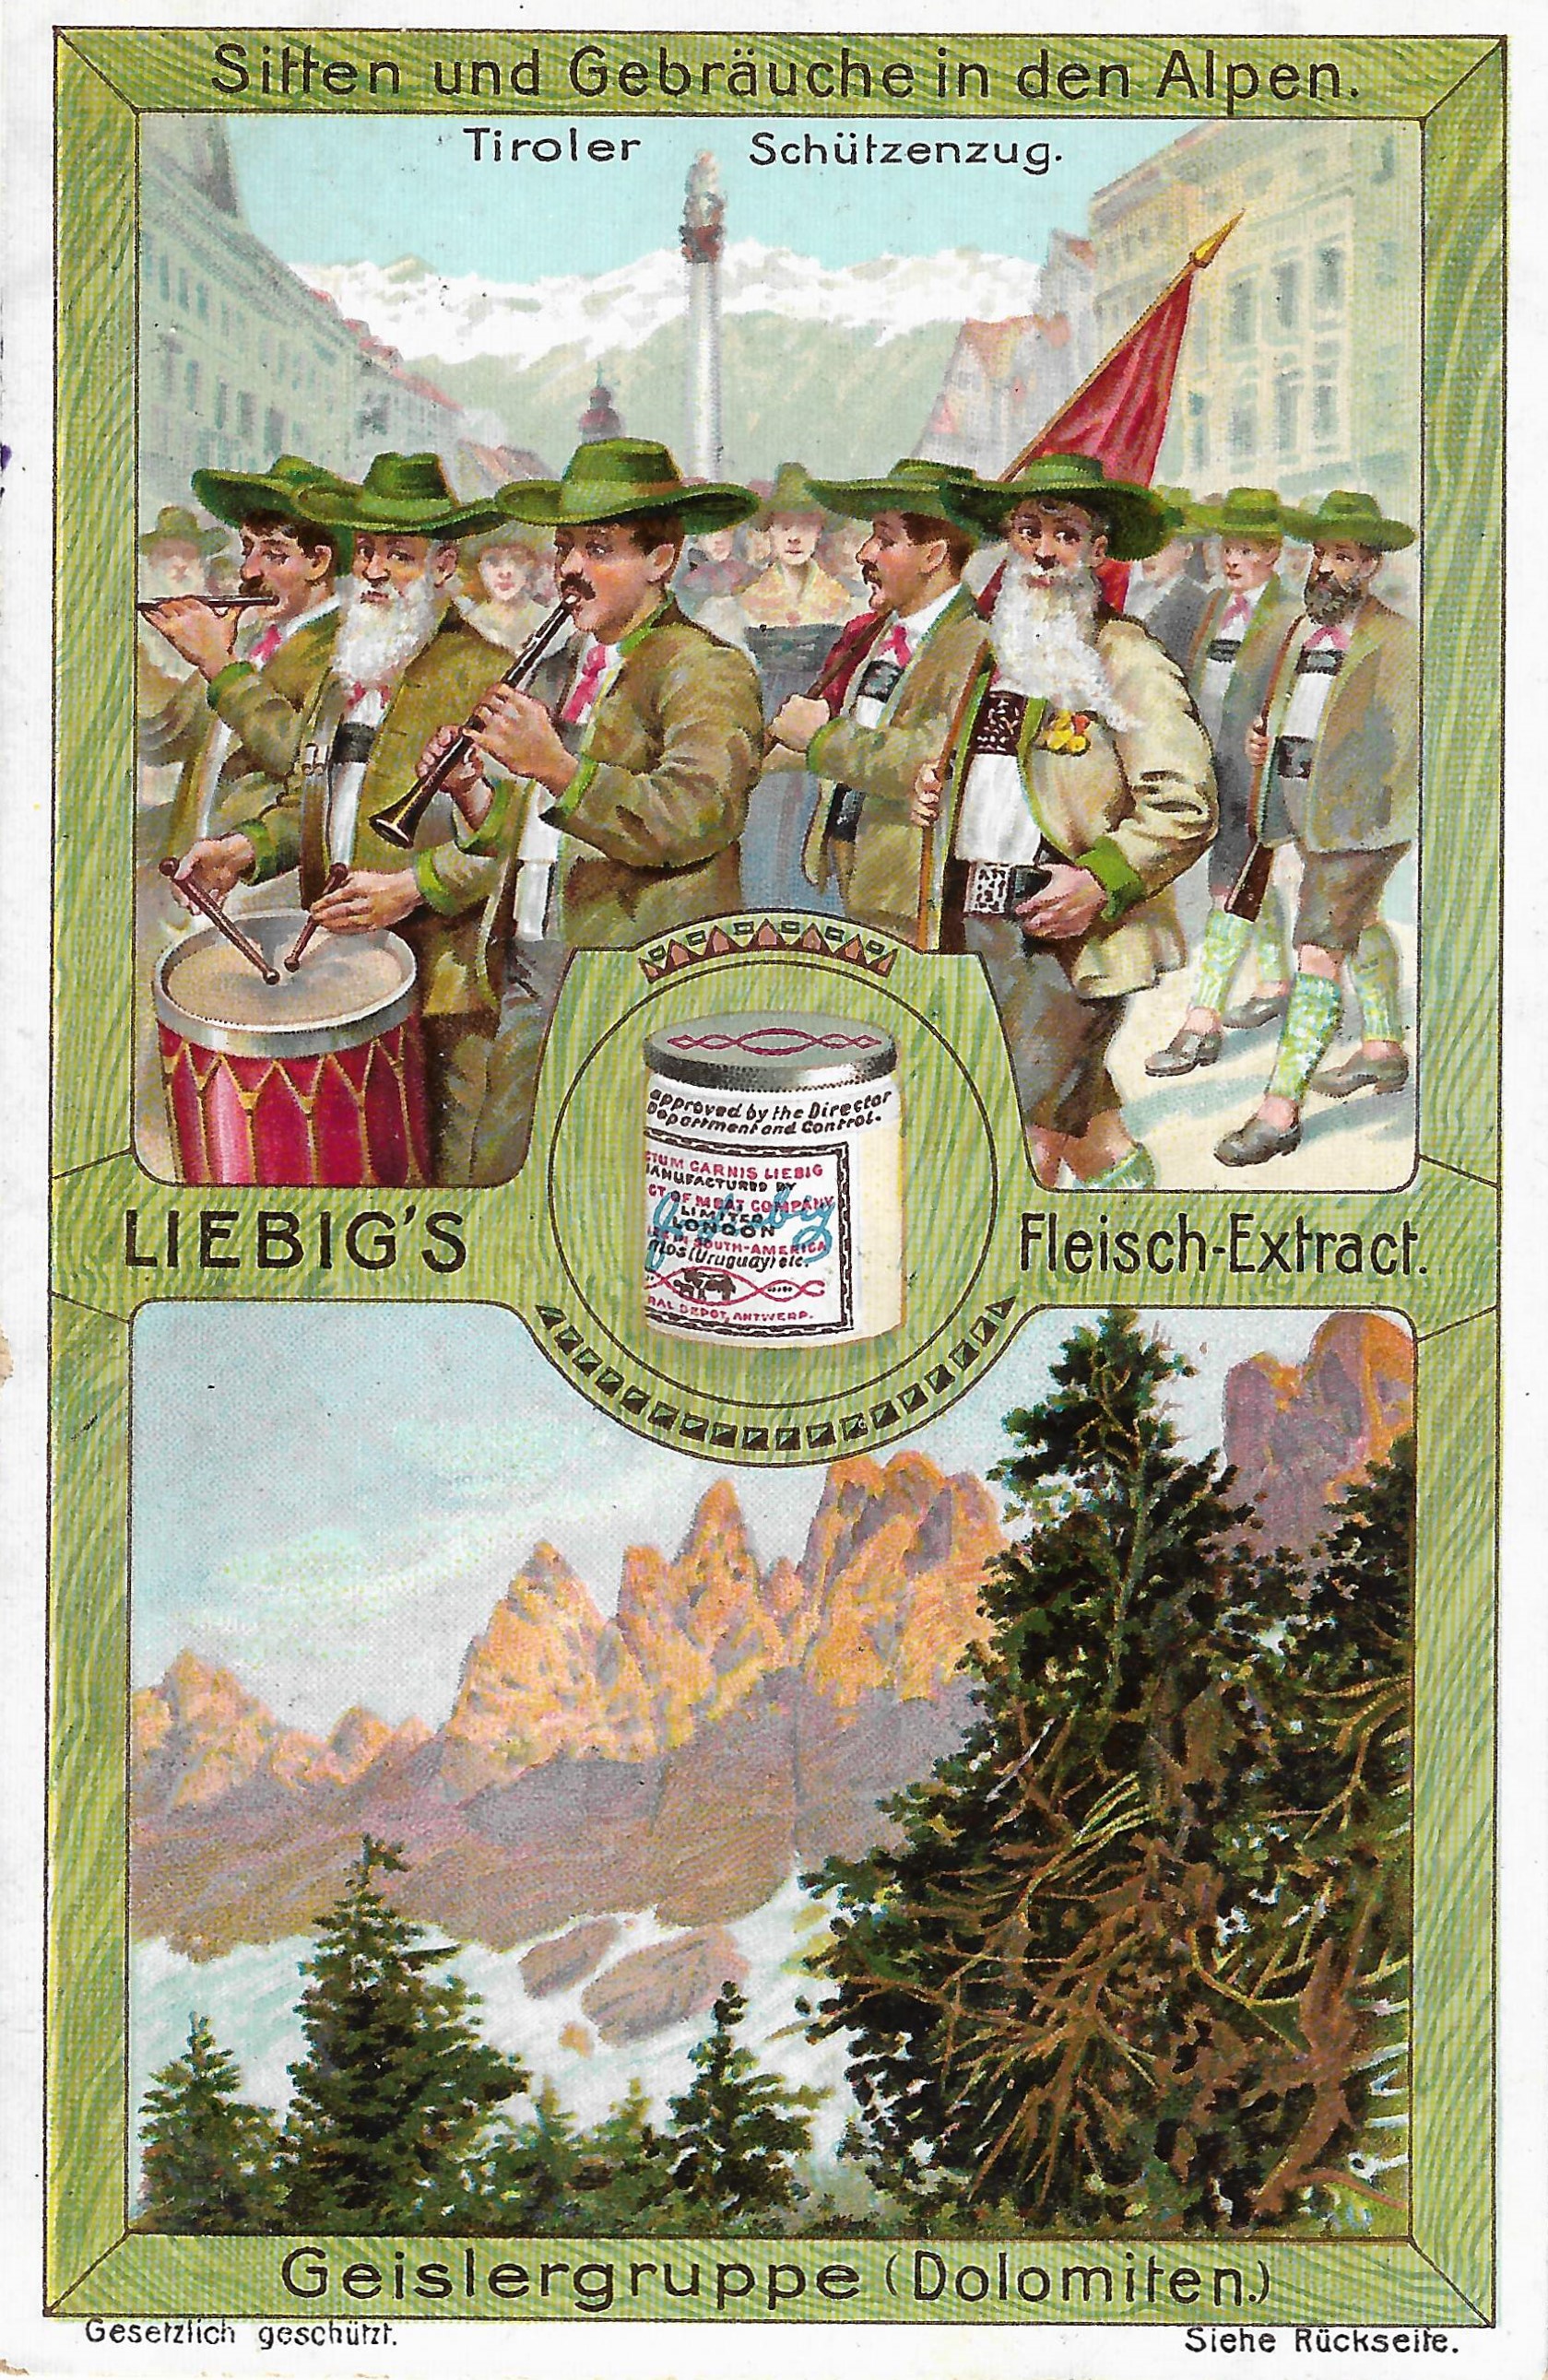 Tradizioni alpine, montagne dell’Alto Adige e un mulino a Velturno come pubblicità per l’estratto di carne